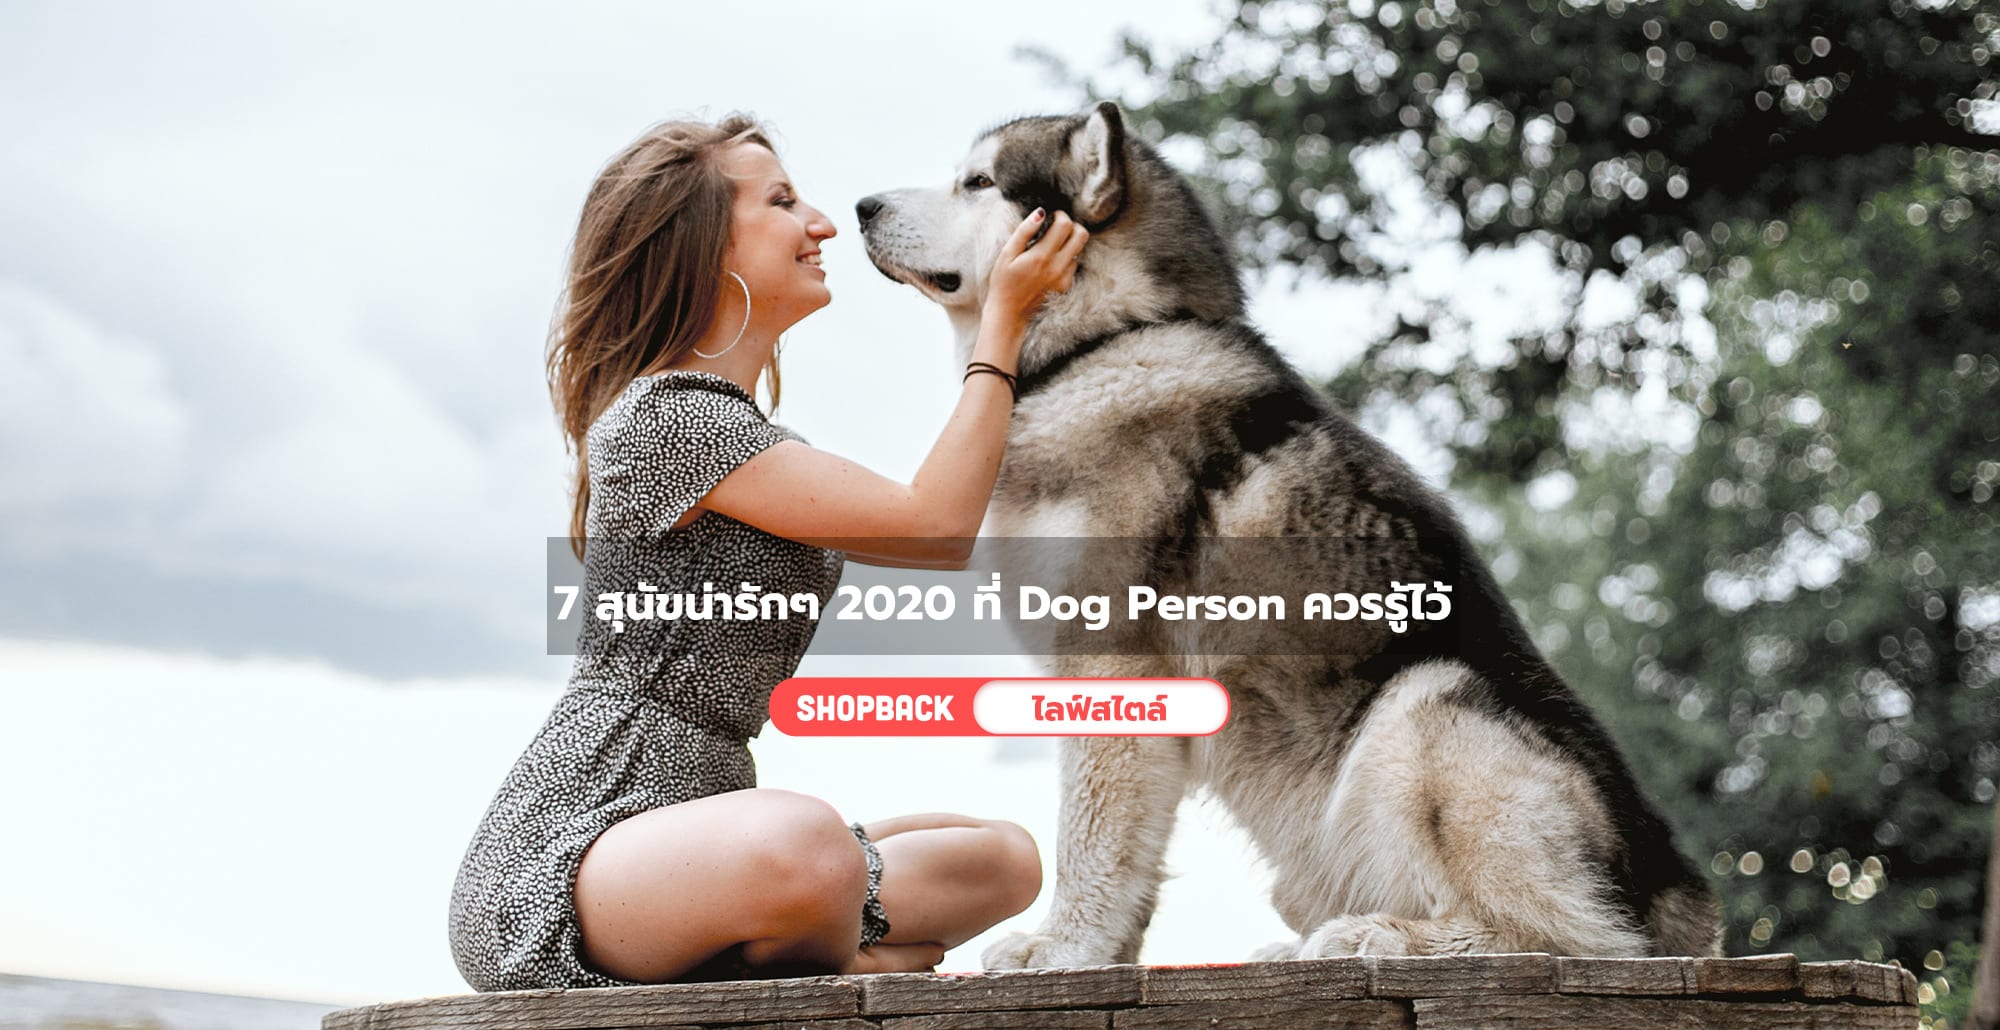 รวม 7 สุนัขน่ารักๆ 2020 พันธุ์น่ารักน่าเลี้ยง ที่ Dog Person ควรรู้ไว้